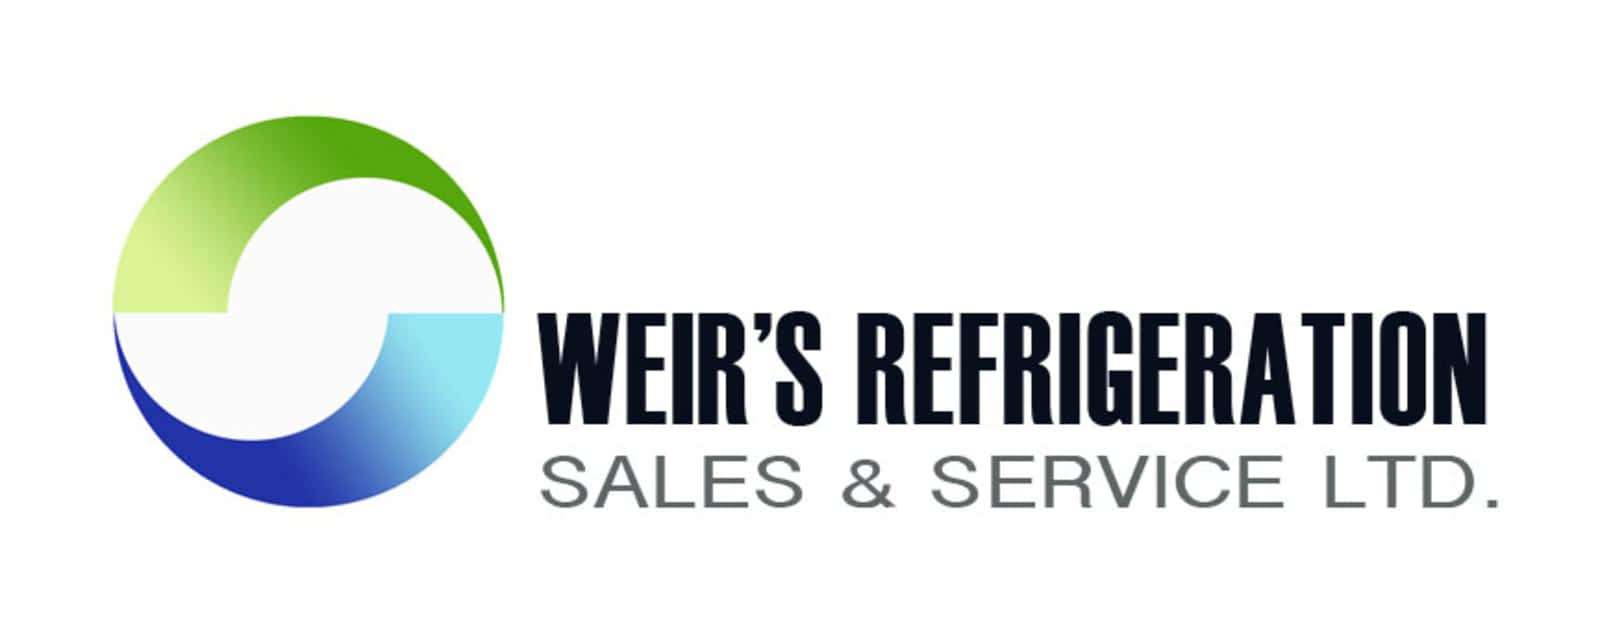 Weir's Refrigeration Sales & Service Ltd Logo